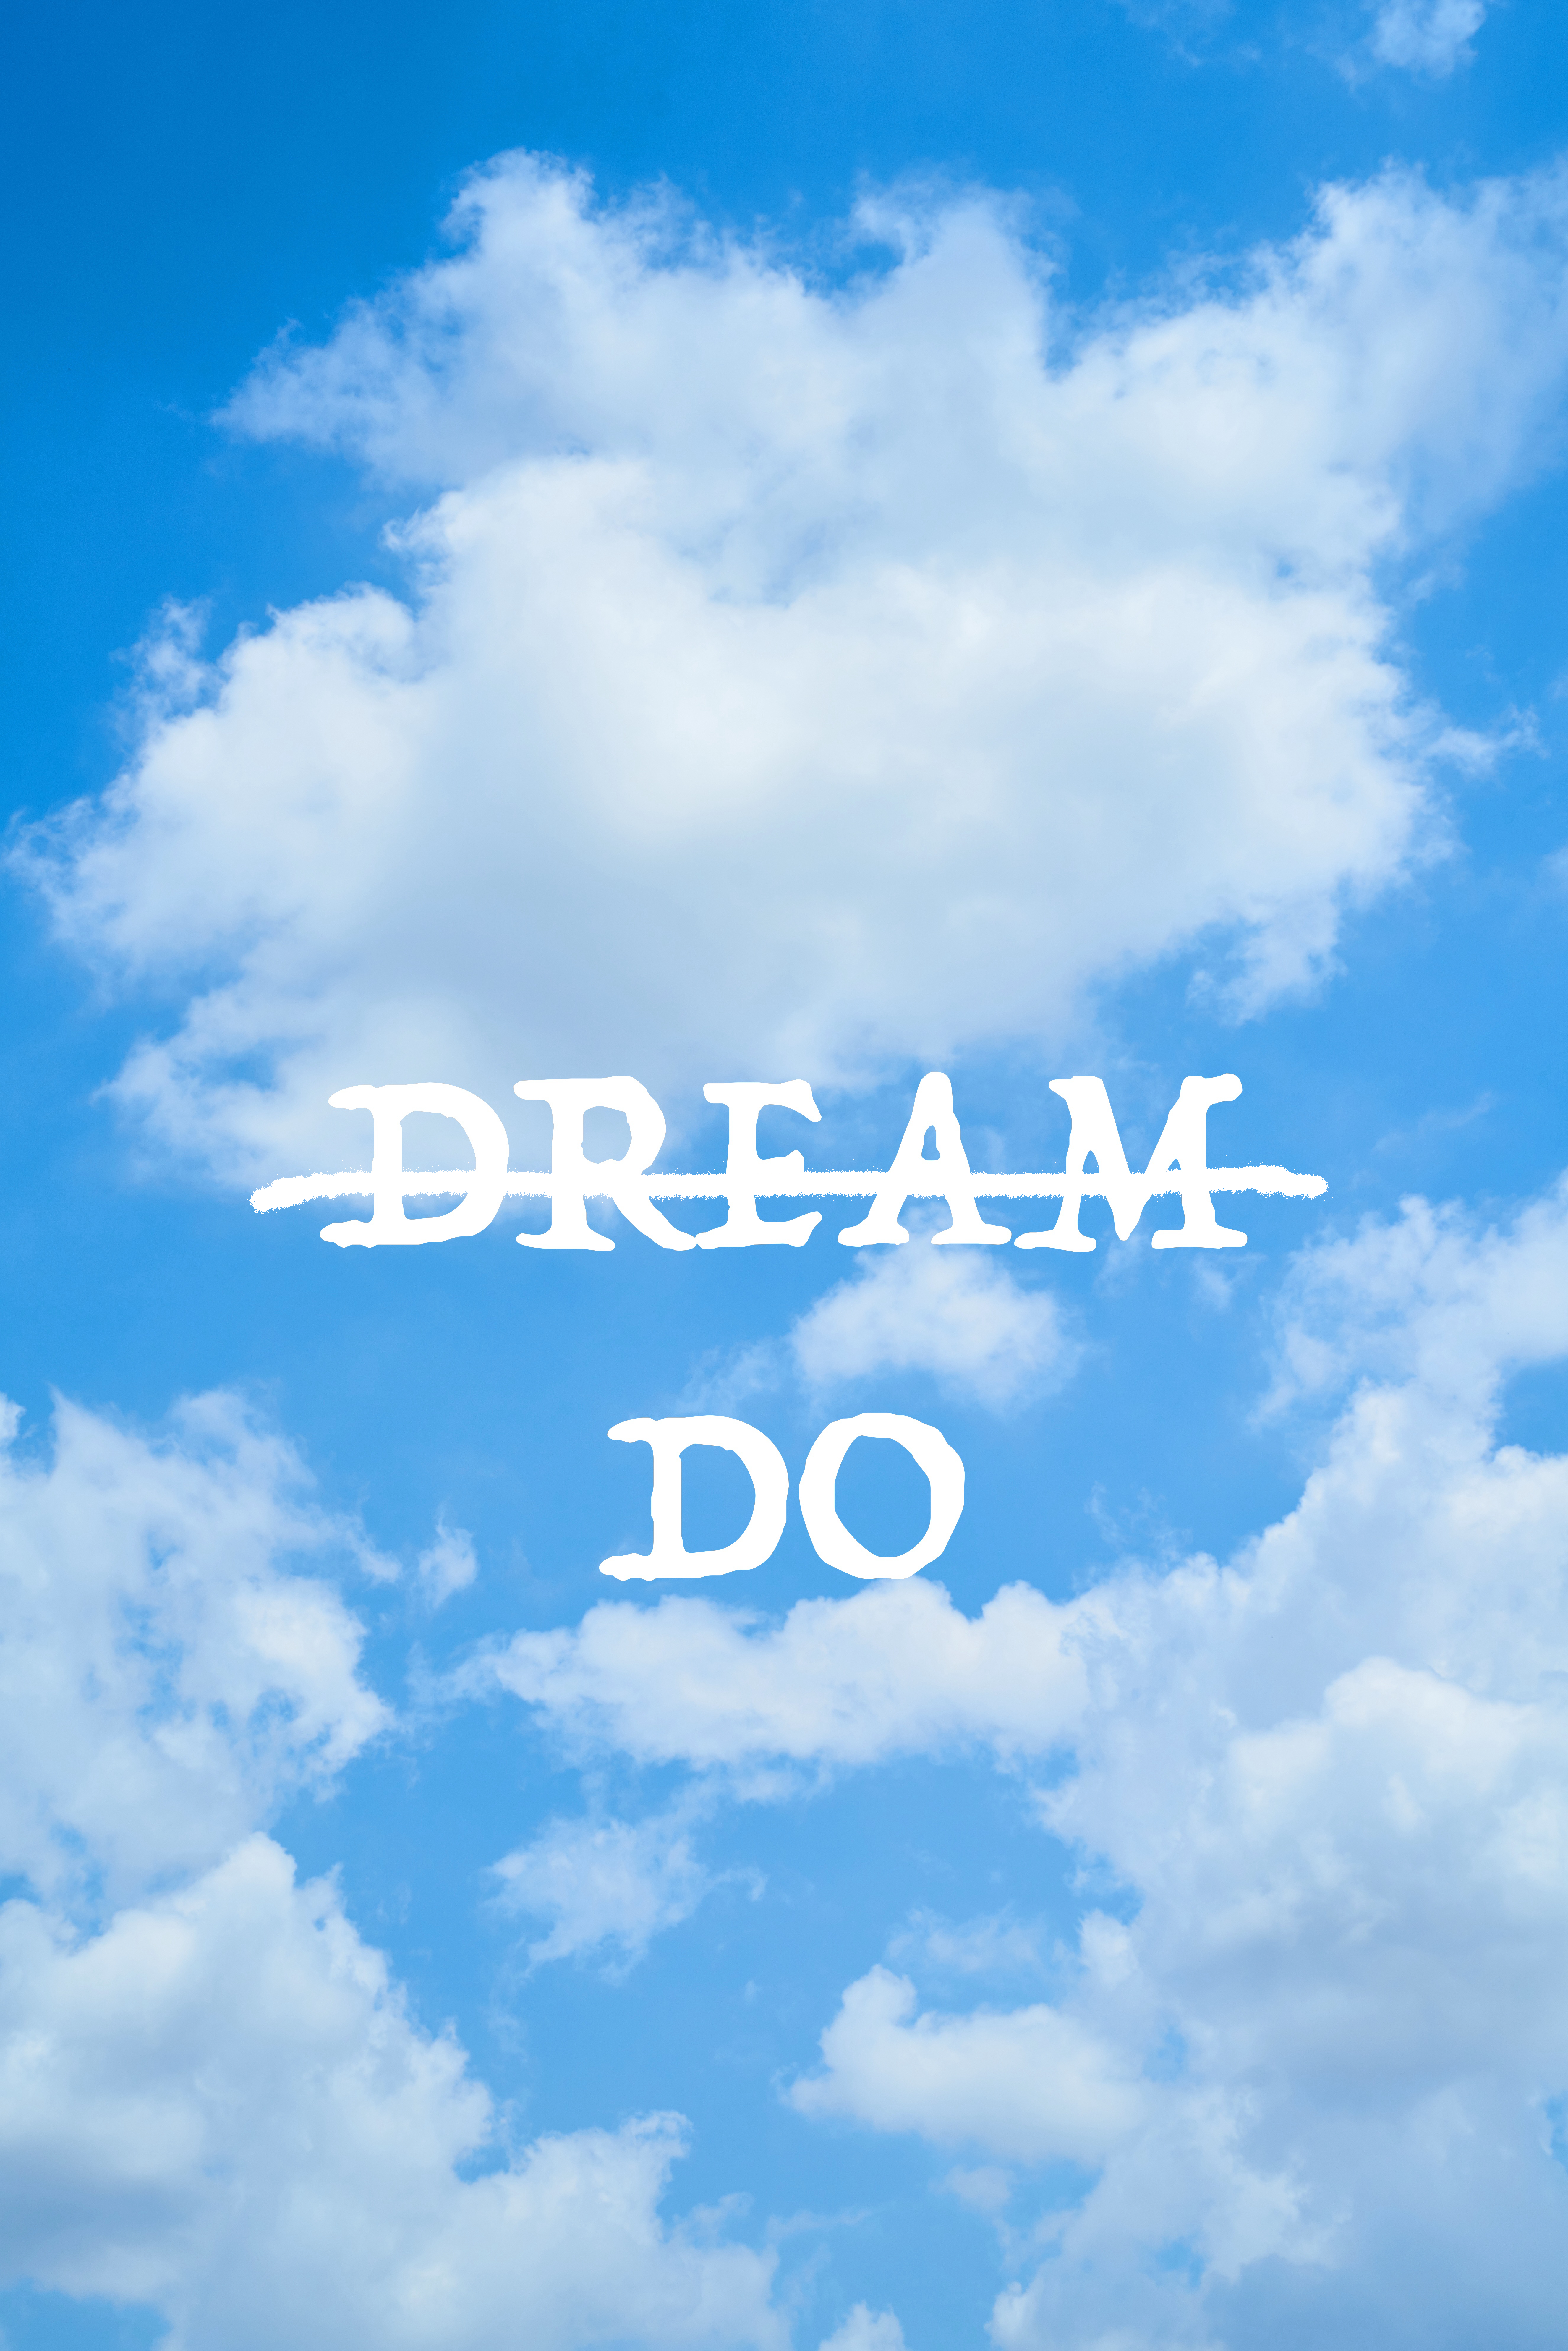 motivation, inspiration, reverie, sky, clouds, words, inscription, dreams, action, act